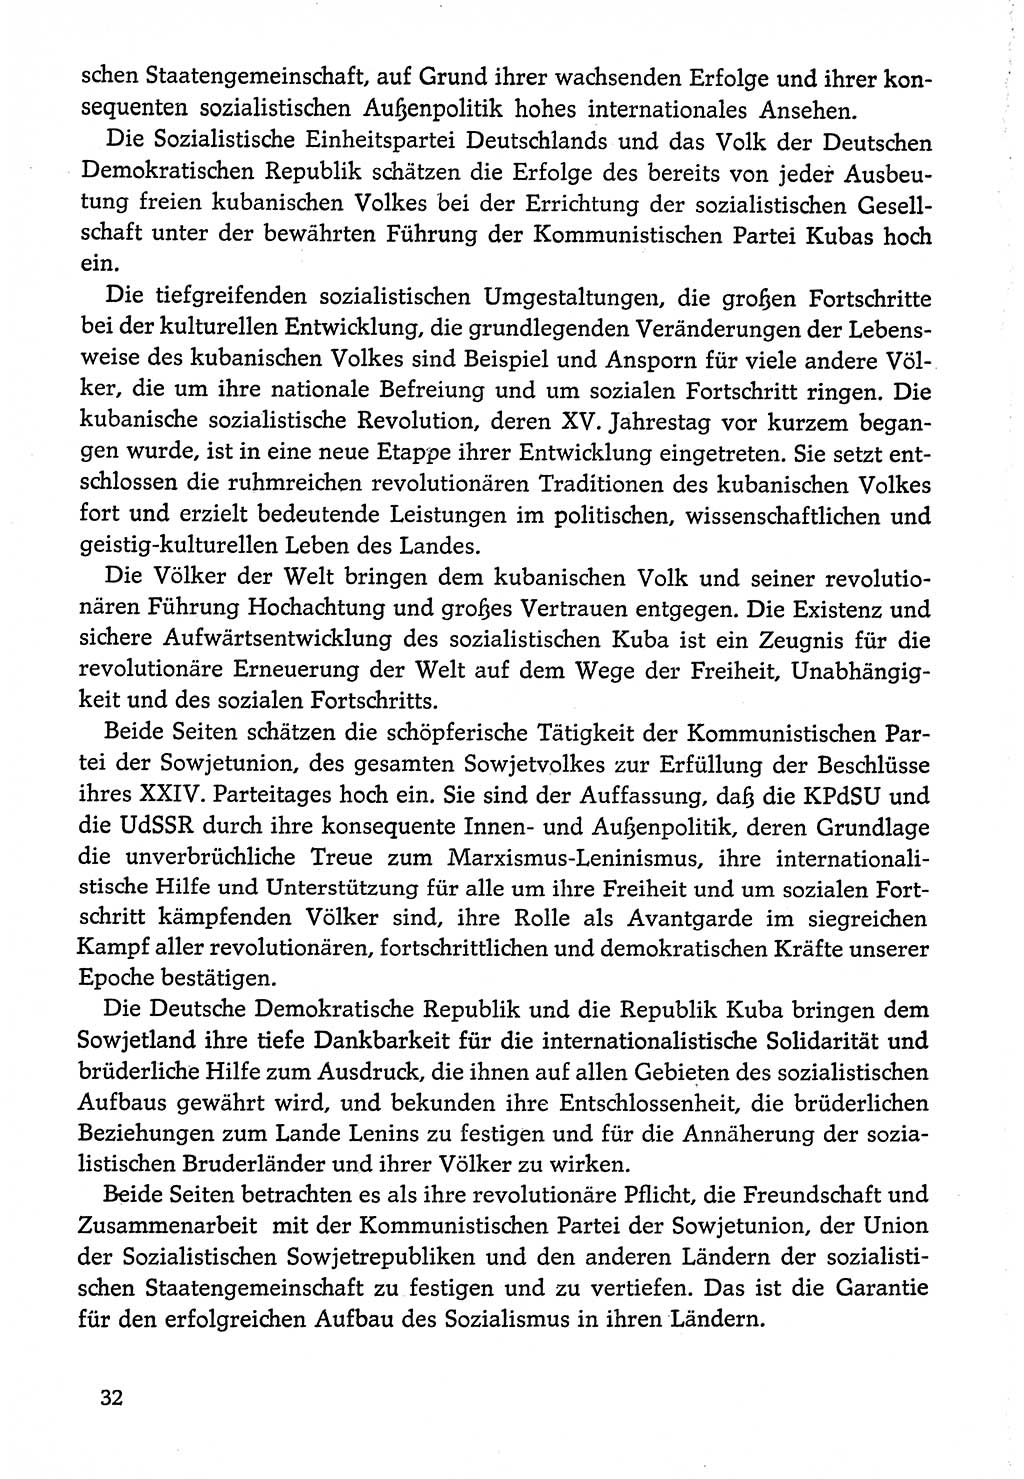 Dokumente der Sozialistischen Einheitspartei Deutschlands (SED) [Deutsche Demokratische Republik (DDR)] 1974-1975, Seite 32 (Dok. SED DDR 1978, Bd. ⅩⅤ, S. 32)